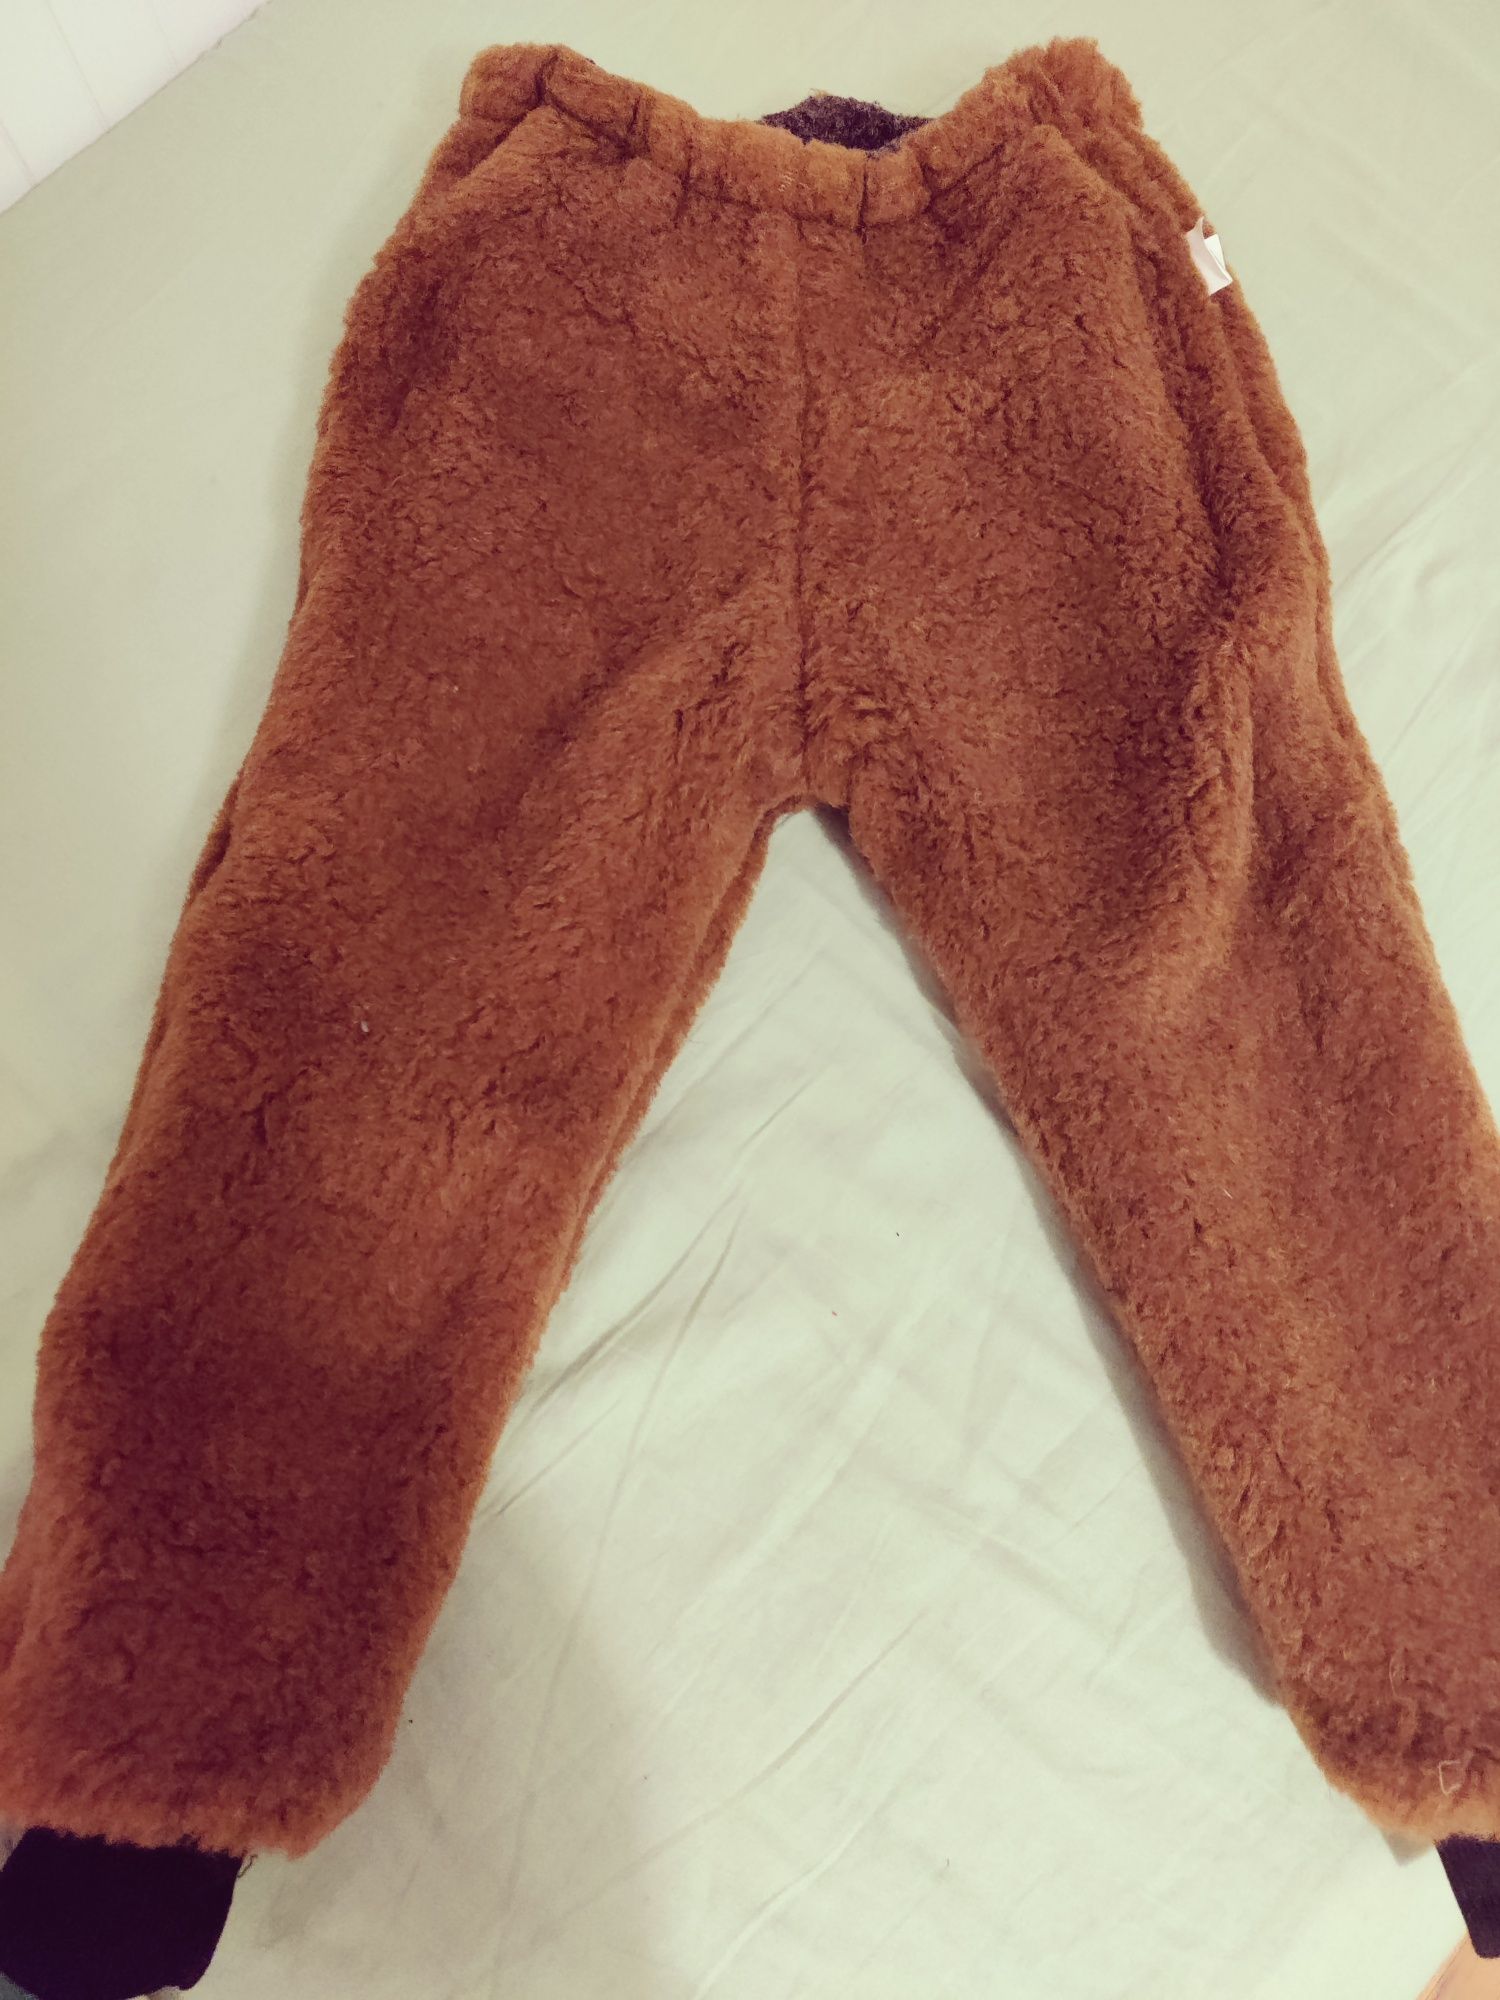 Pantaloni lana dublată reversibili Inimioara 3-5 ani NOI